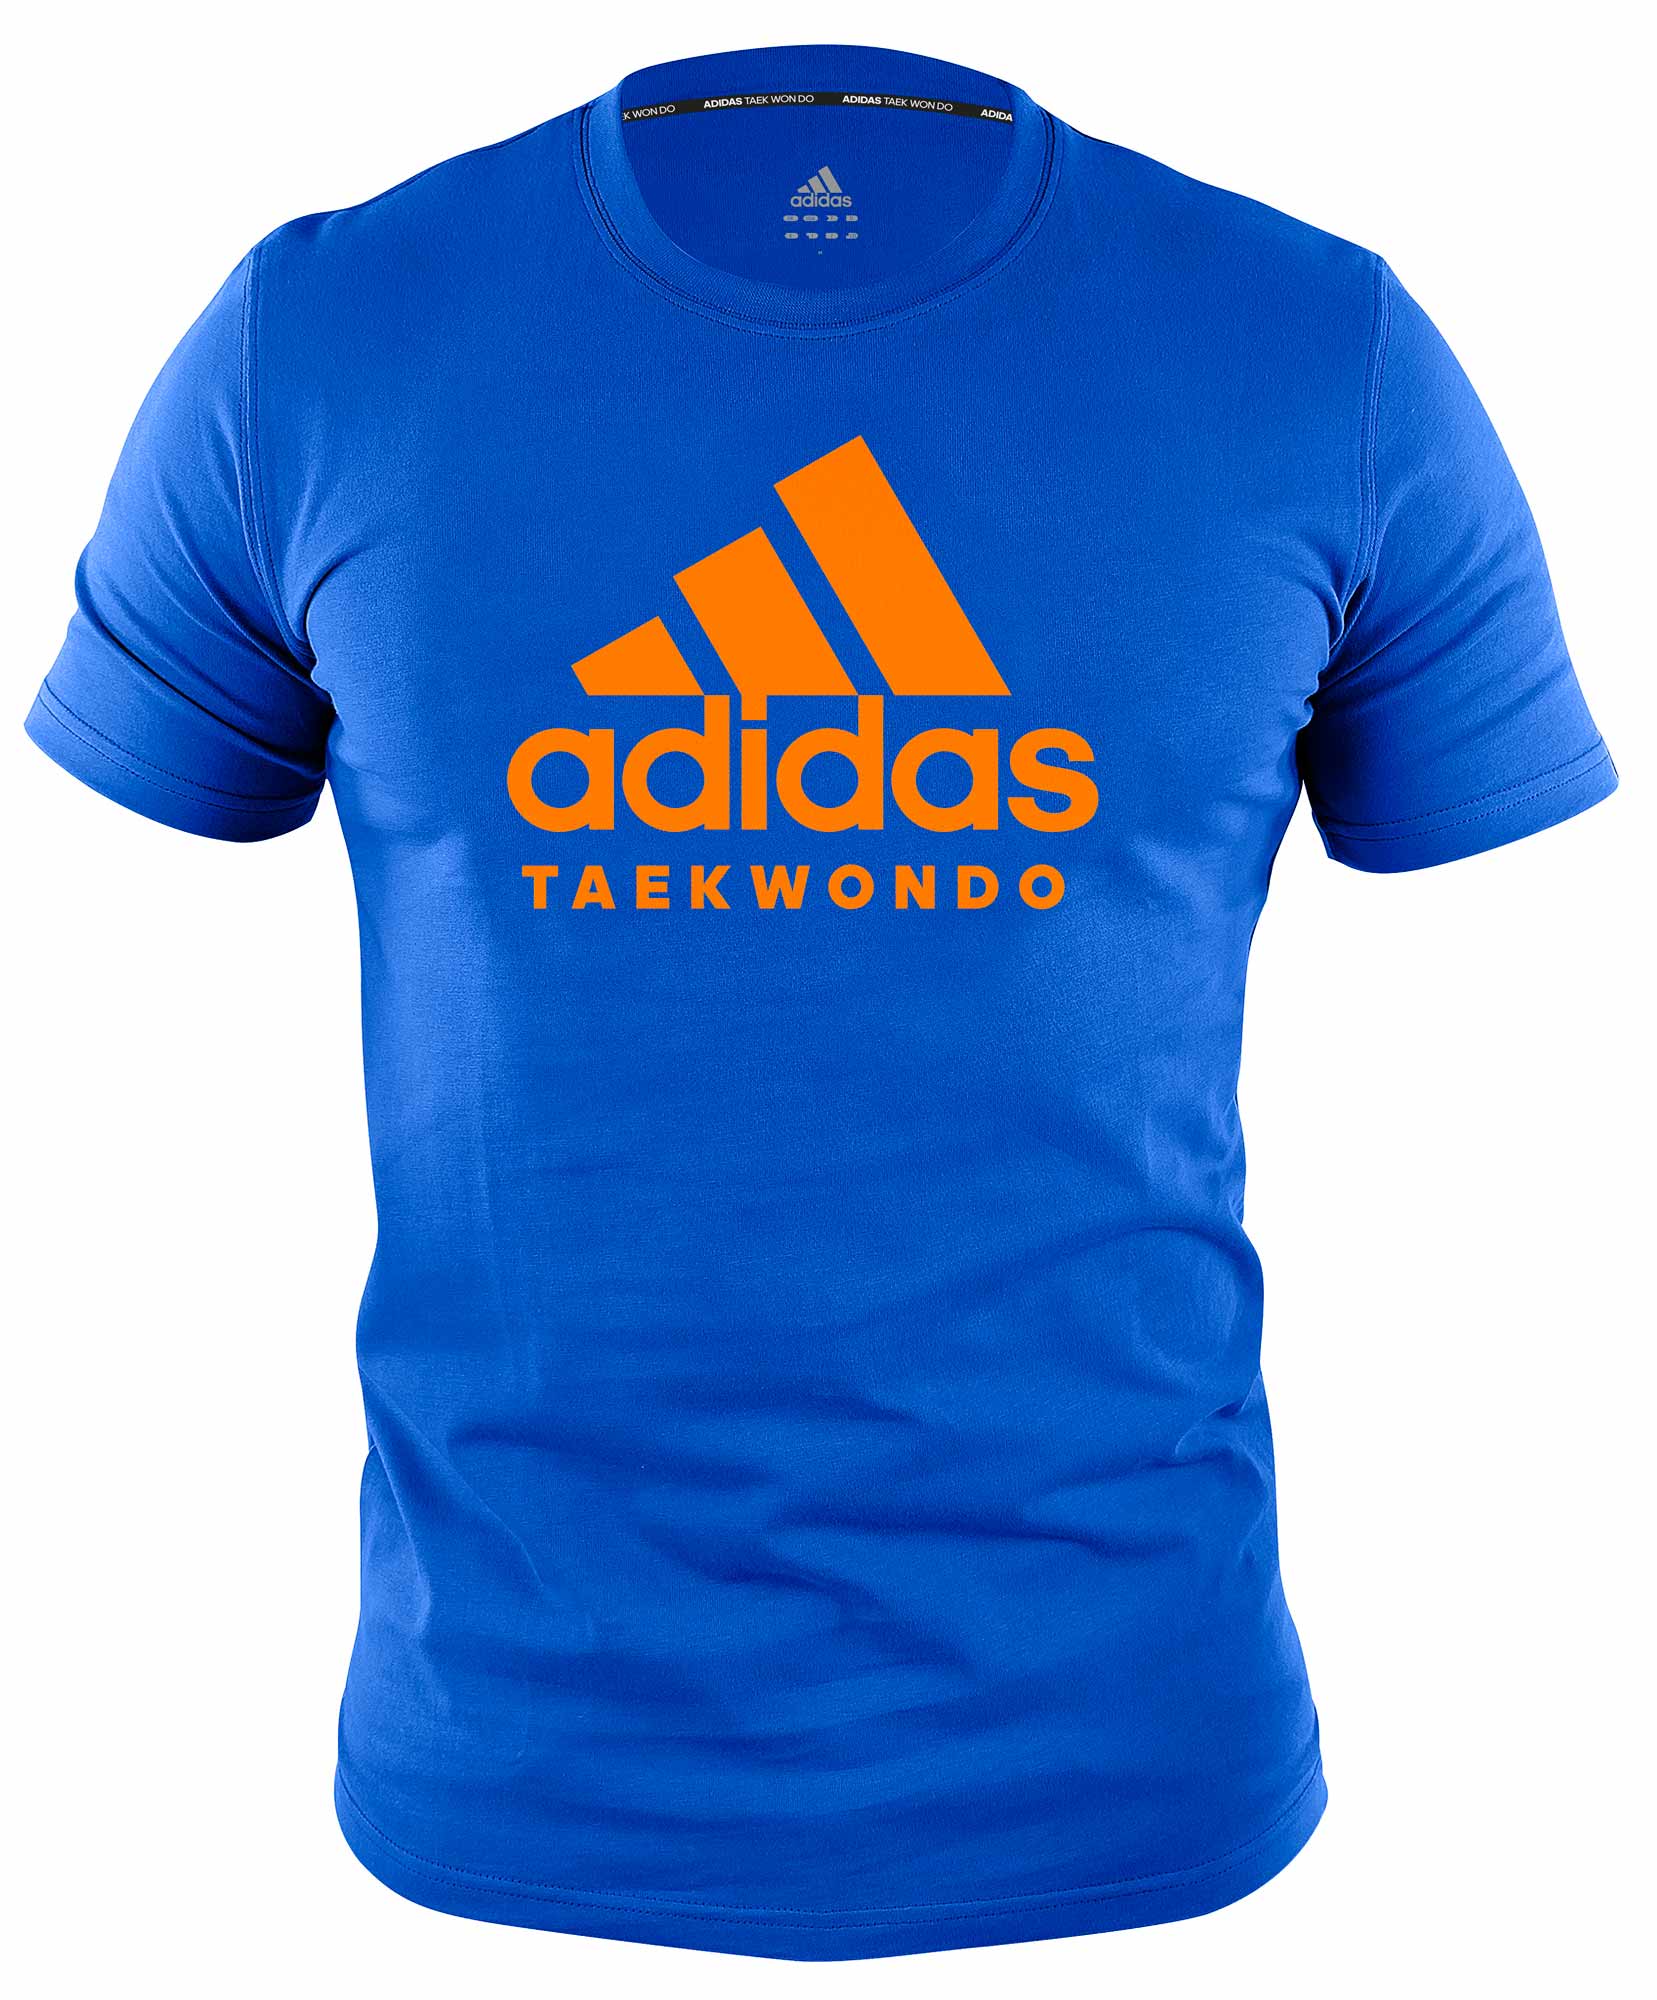 adidas Community Line T-Shirt Taekwondo Performance ADICTTKD blue/orange